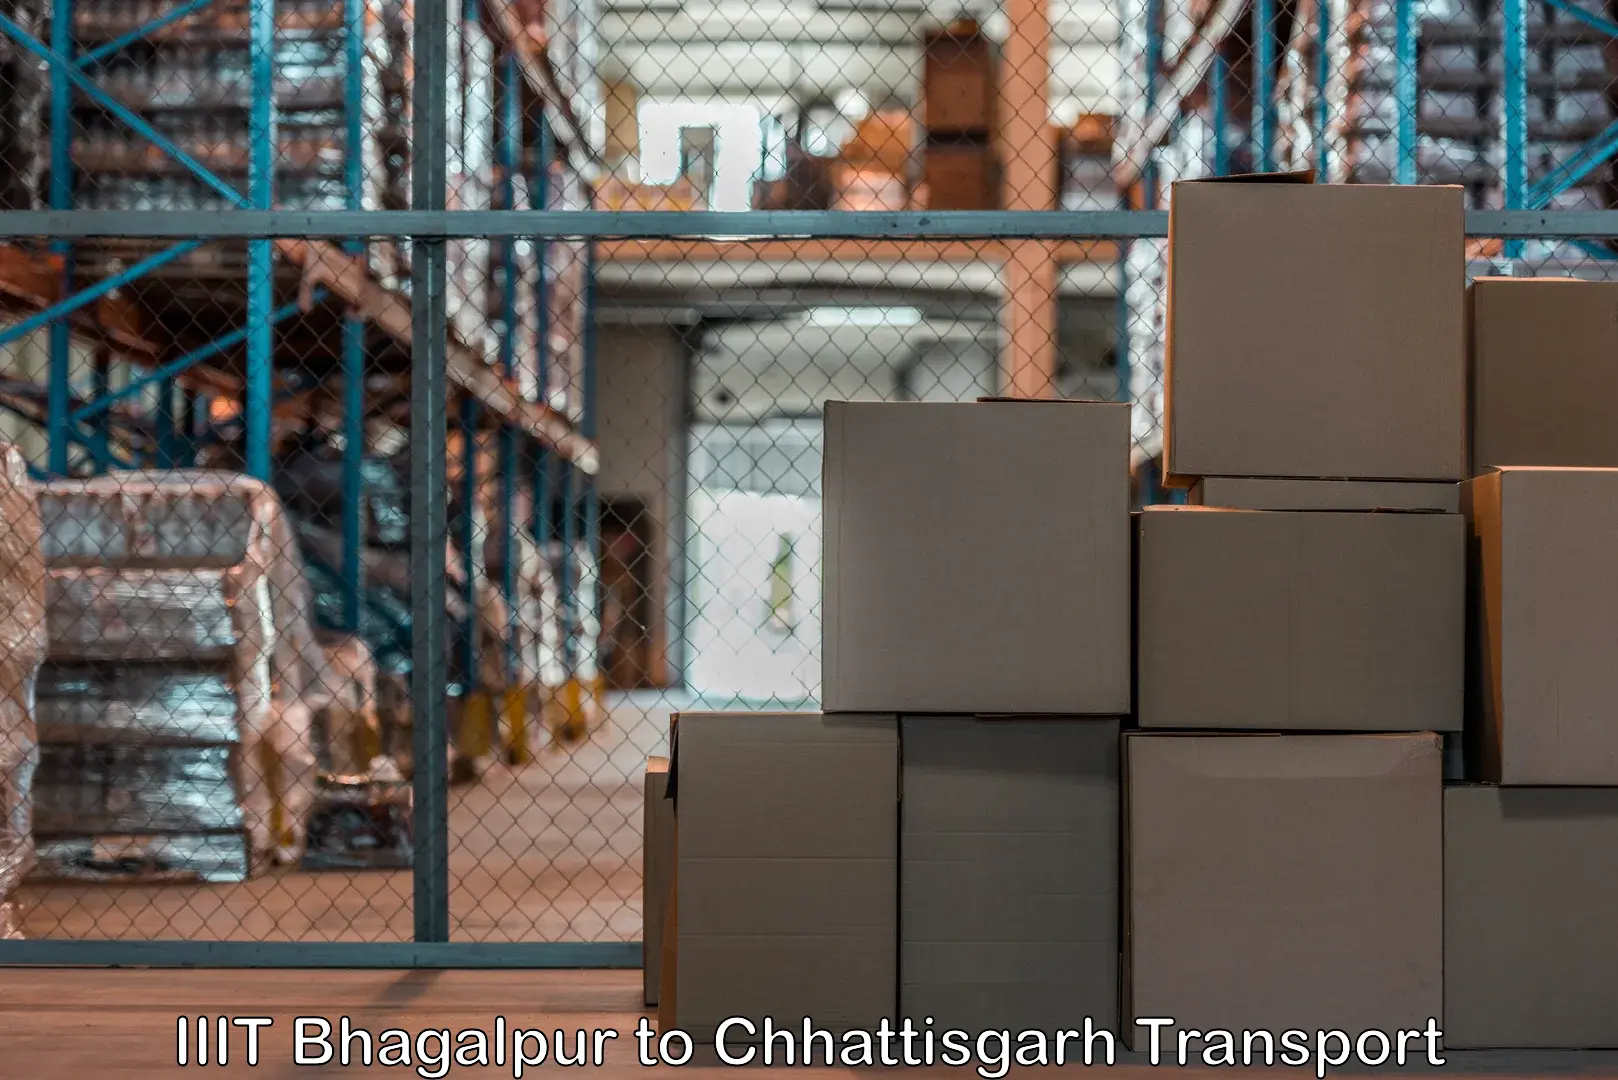 Cargo transport services IIIT Bhagalpur to Jagdalpur